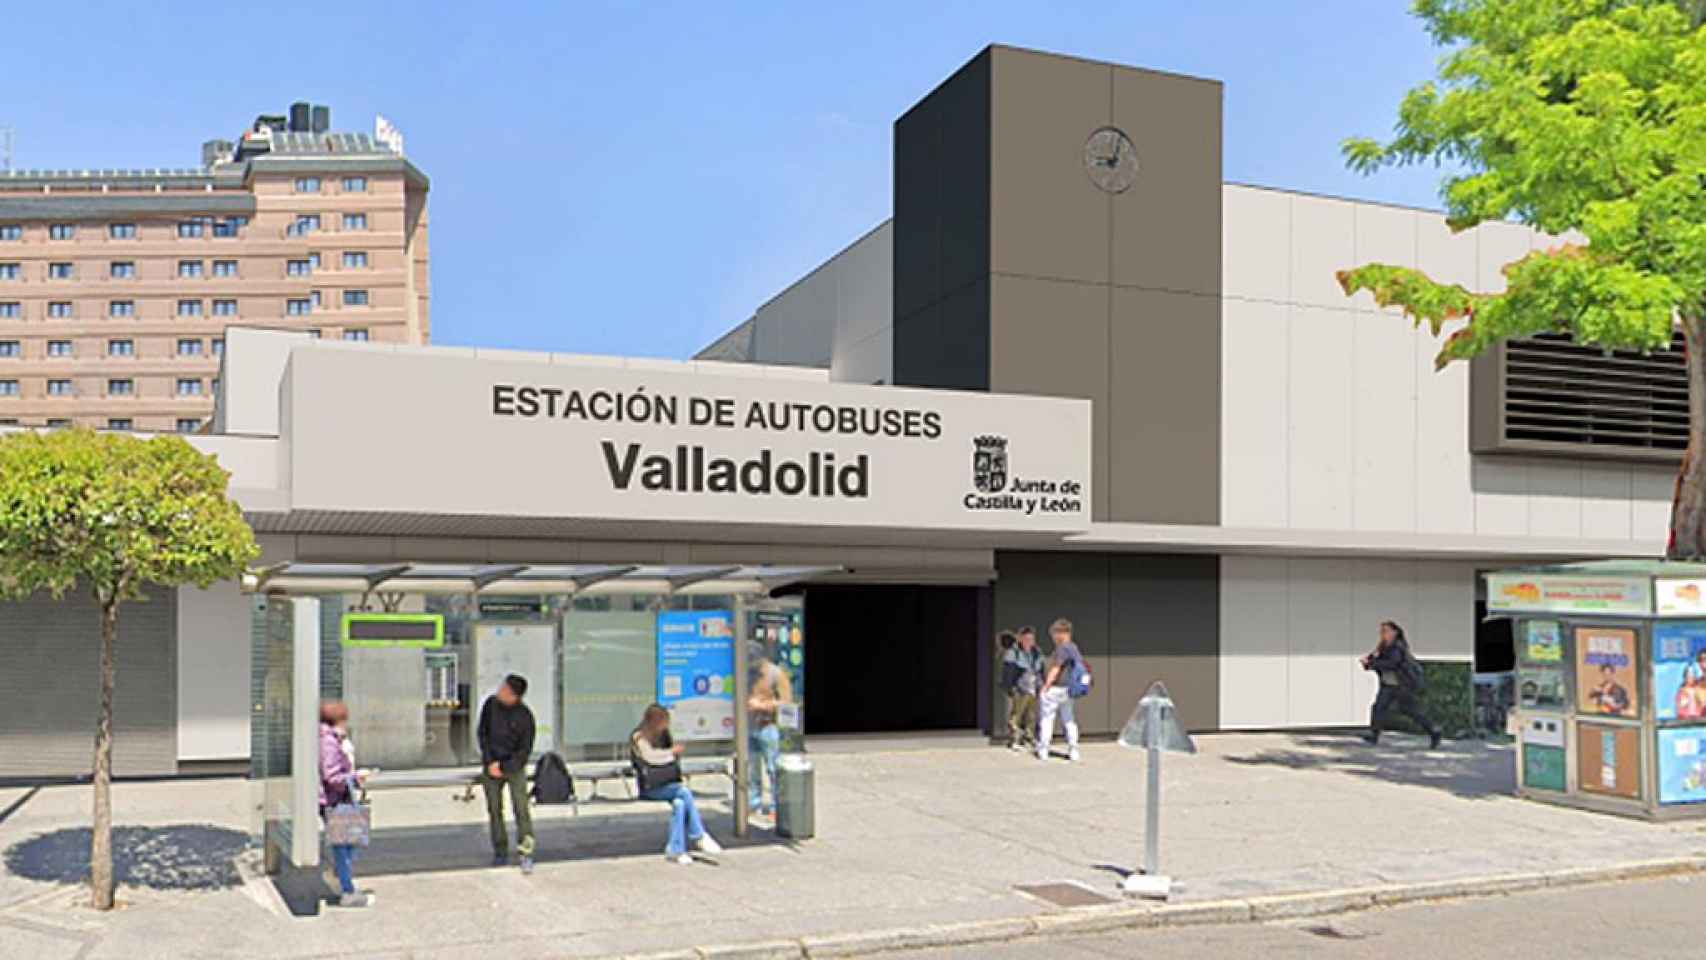 Imagen de la remodelación de la estación de autobuses de Valladolid